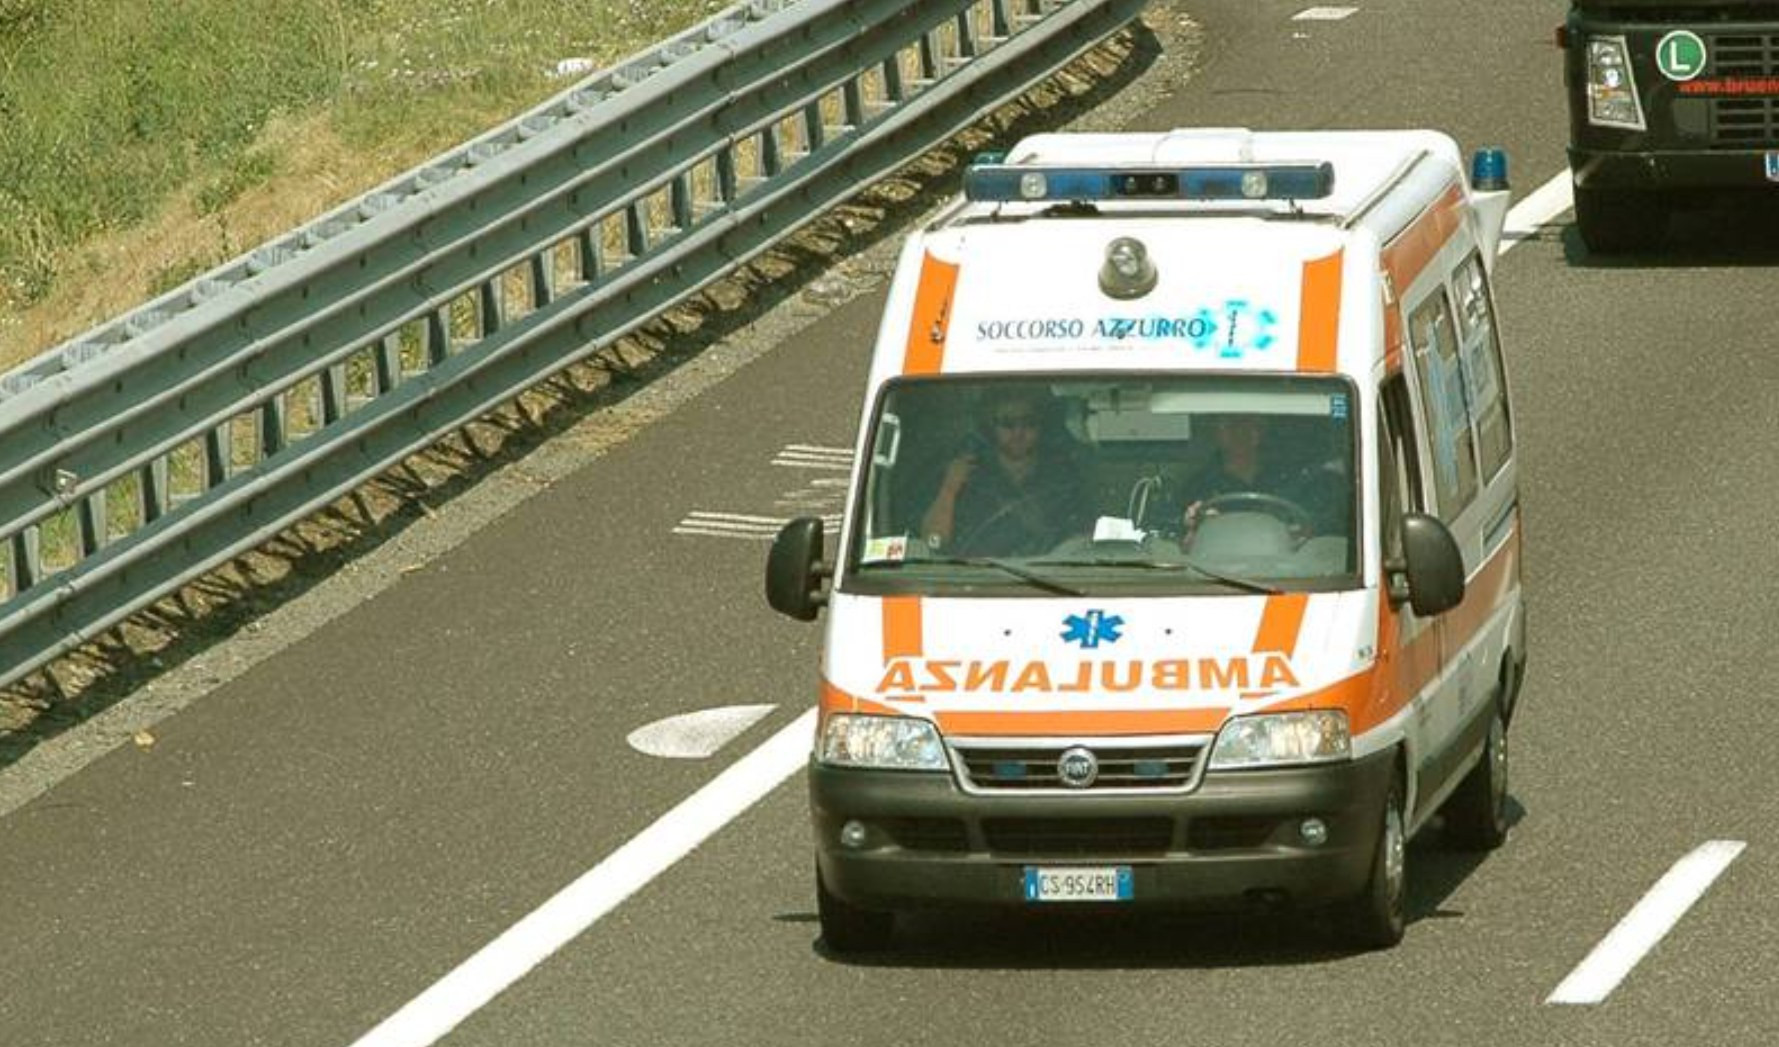 Caos autostrade dopo incidenti in A10, bimbo nasce in ambulanza